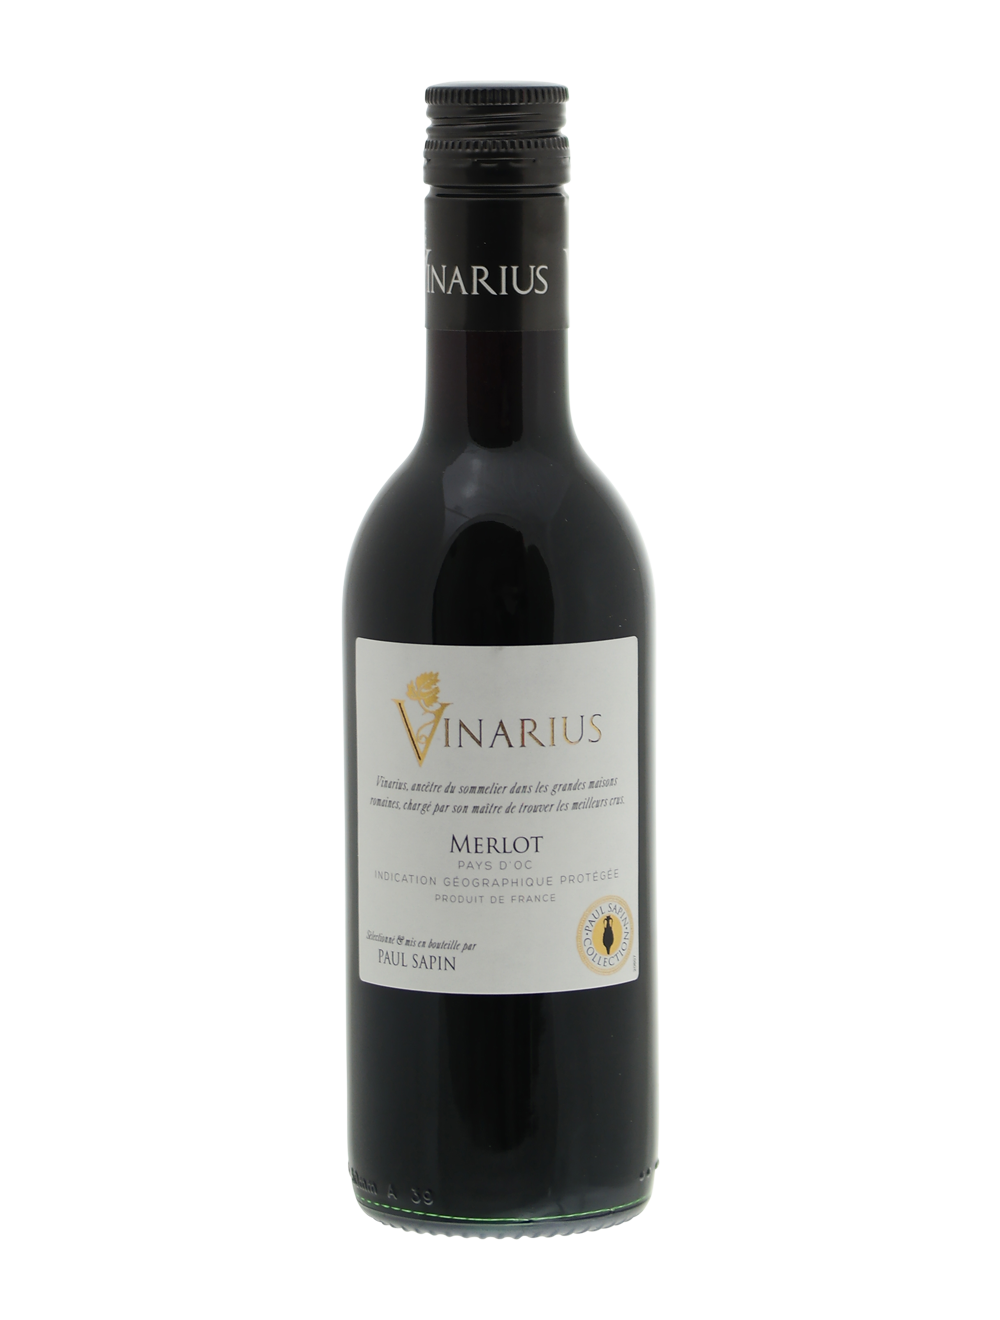 Vinarius Merlot klein flesje wijn (0,25 liter) | online kleine flesjes wijn kopen | Merlot Vinarius online kopen